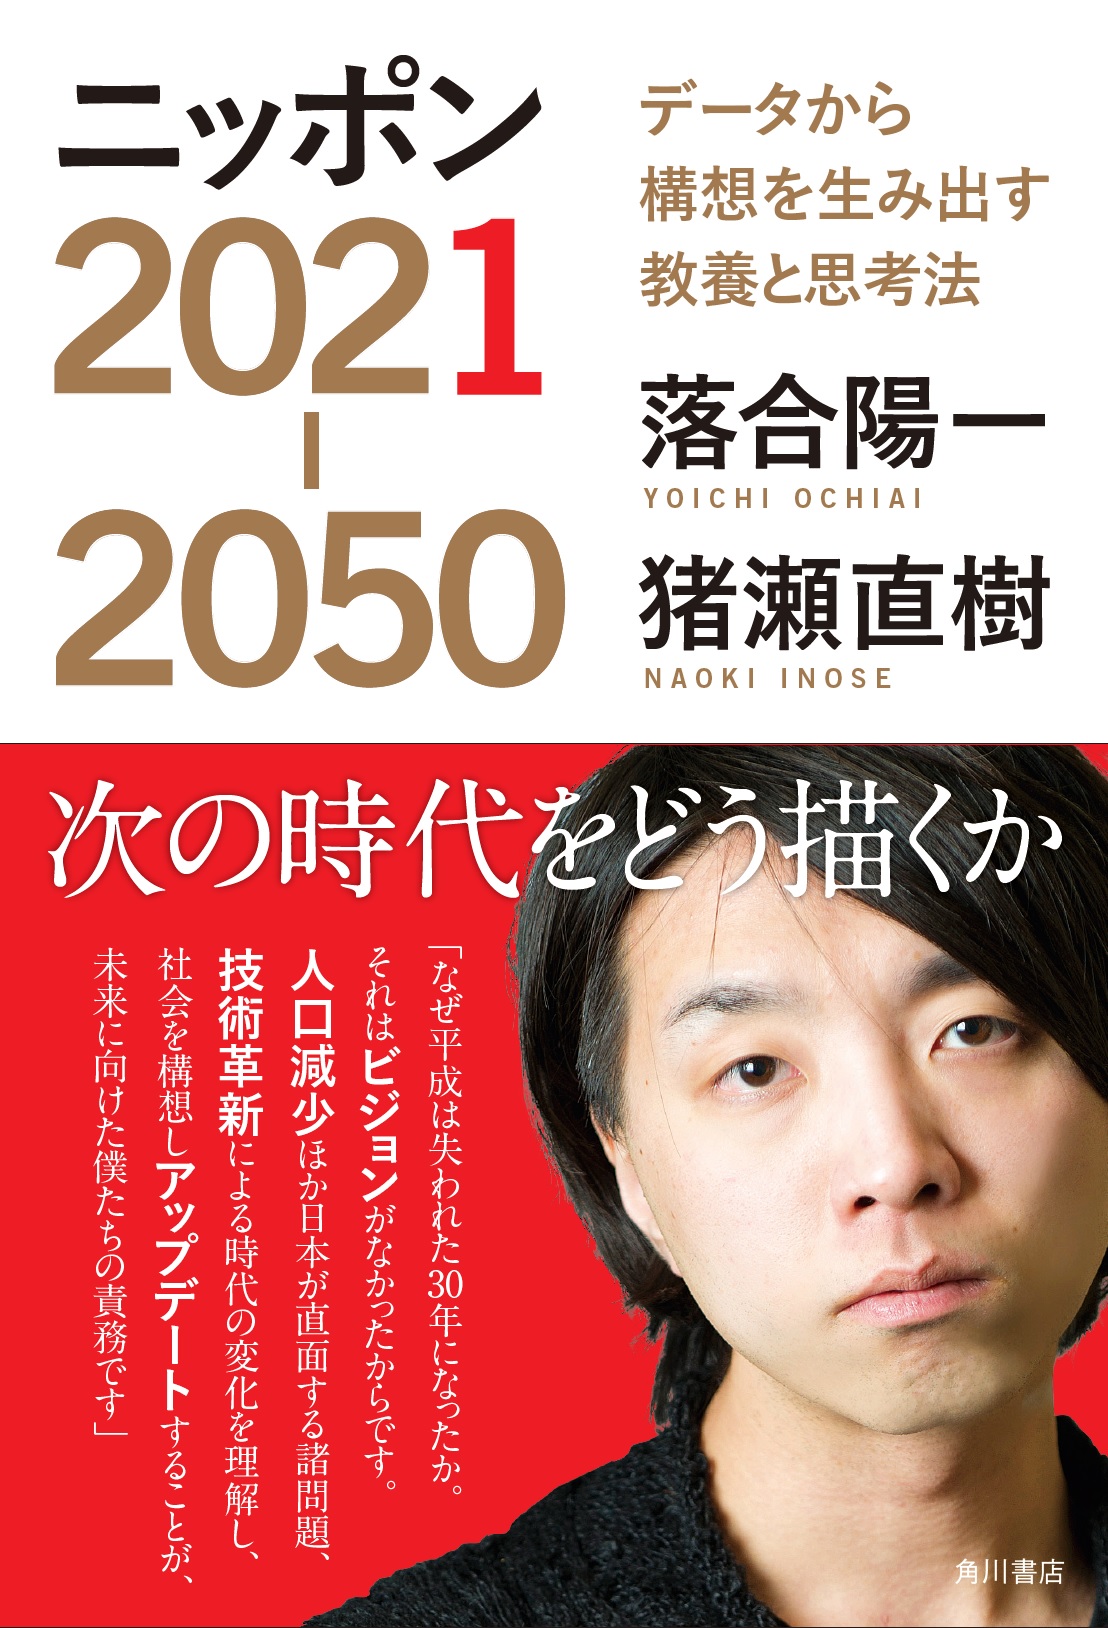 ニッポン2021-2050 データから構想を生み出す教養と思考法の商品画像